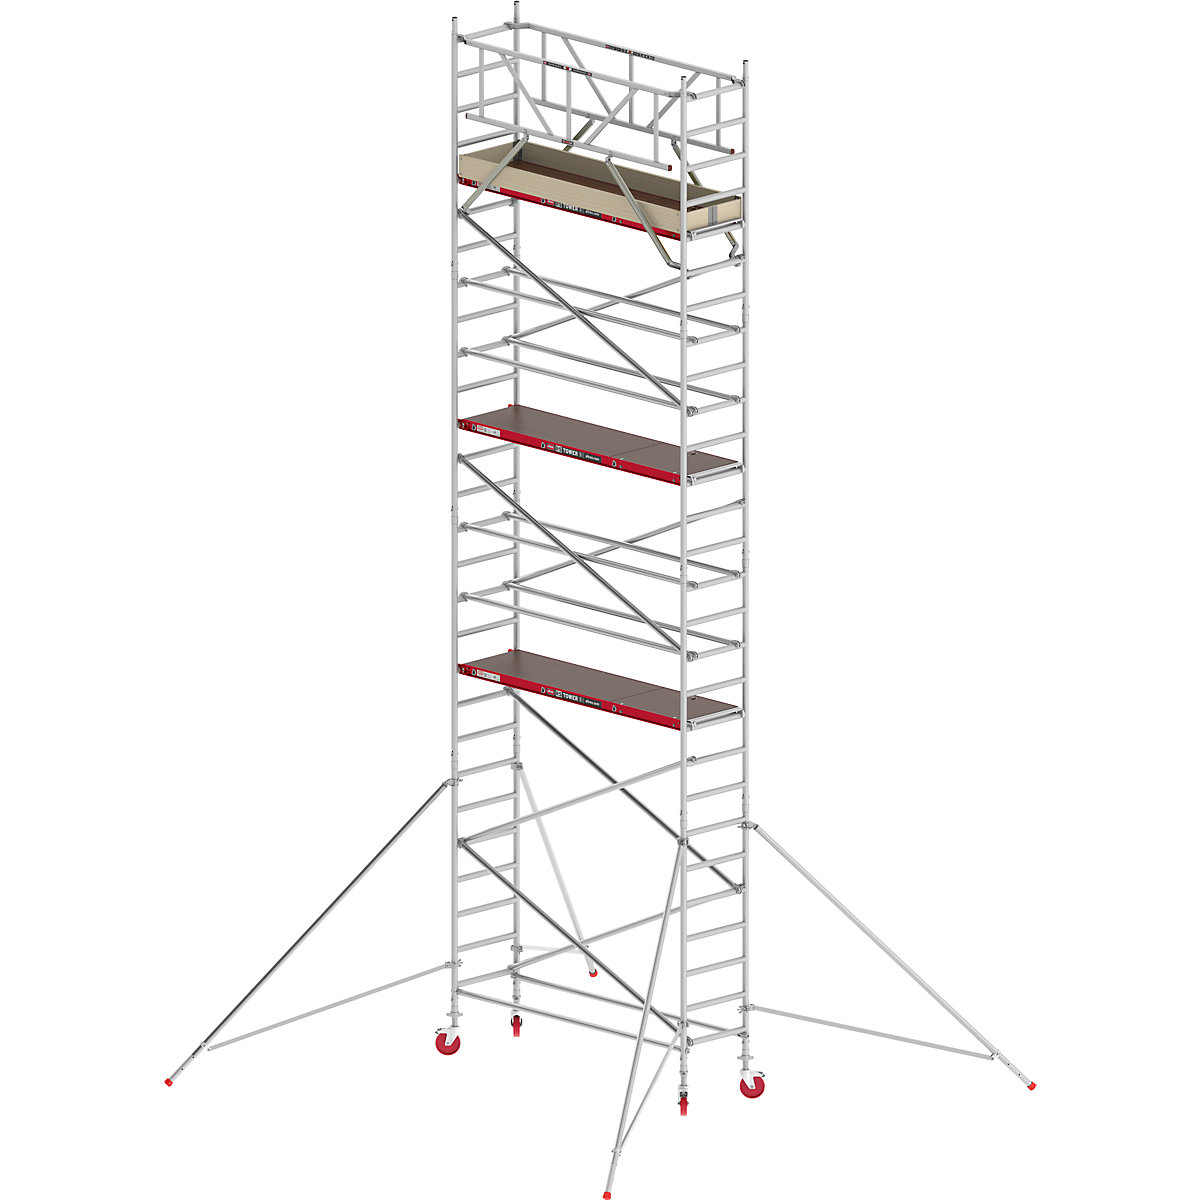 Fahrgerüst RS TOWER 41 schmal Altrex, Holzplattform, Länge 1,85 m, Arbeitshöhe 9,20 m-1